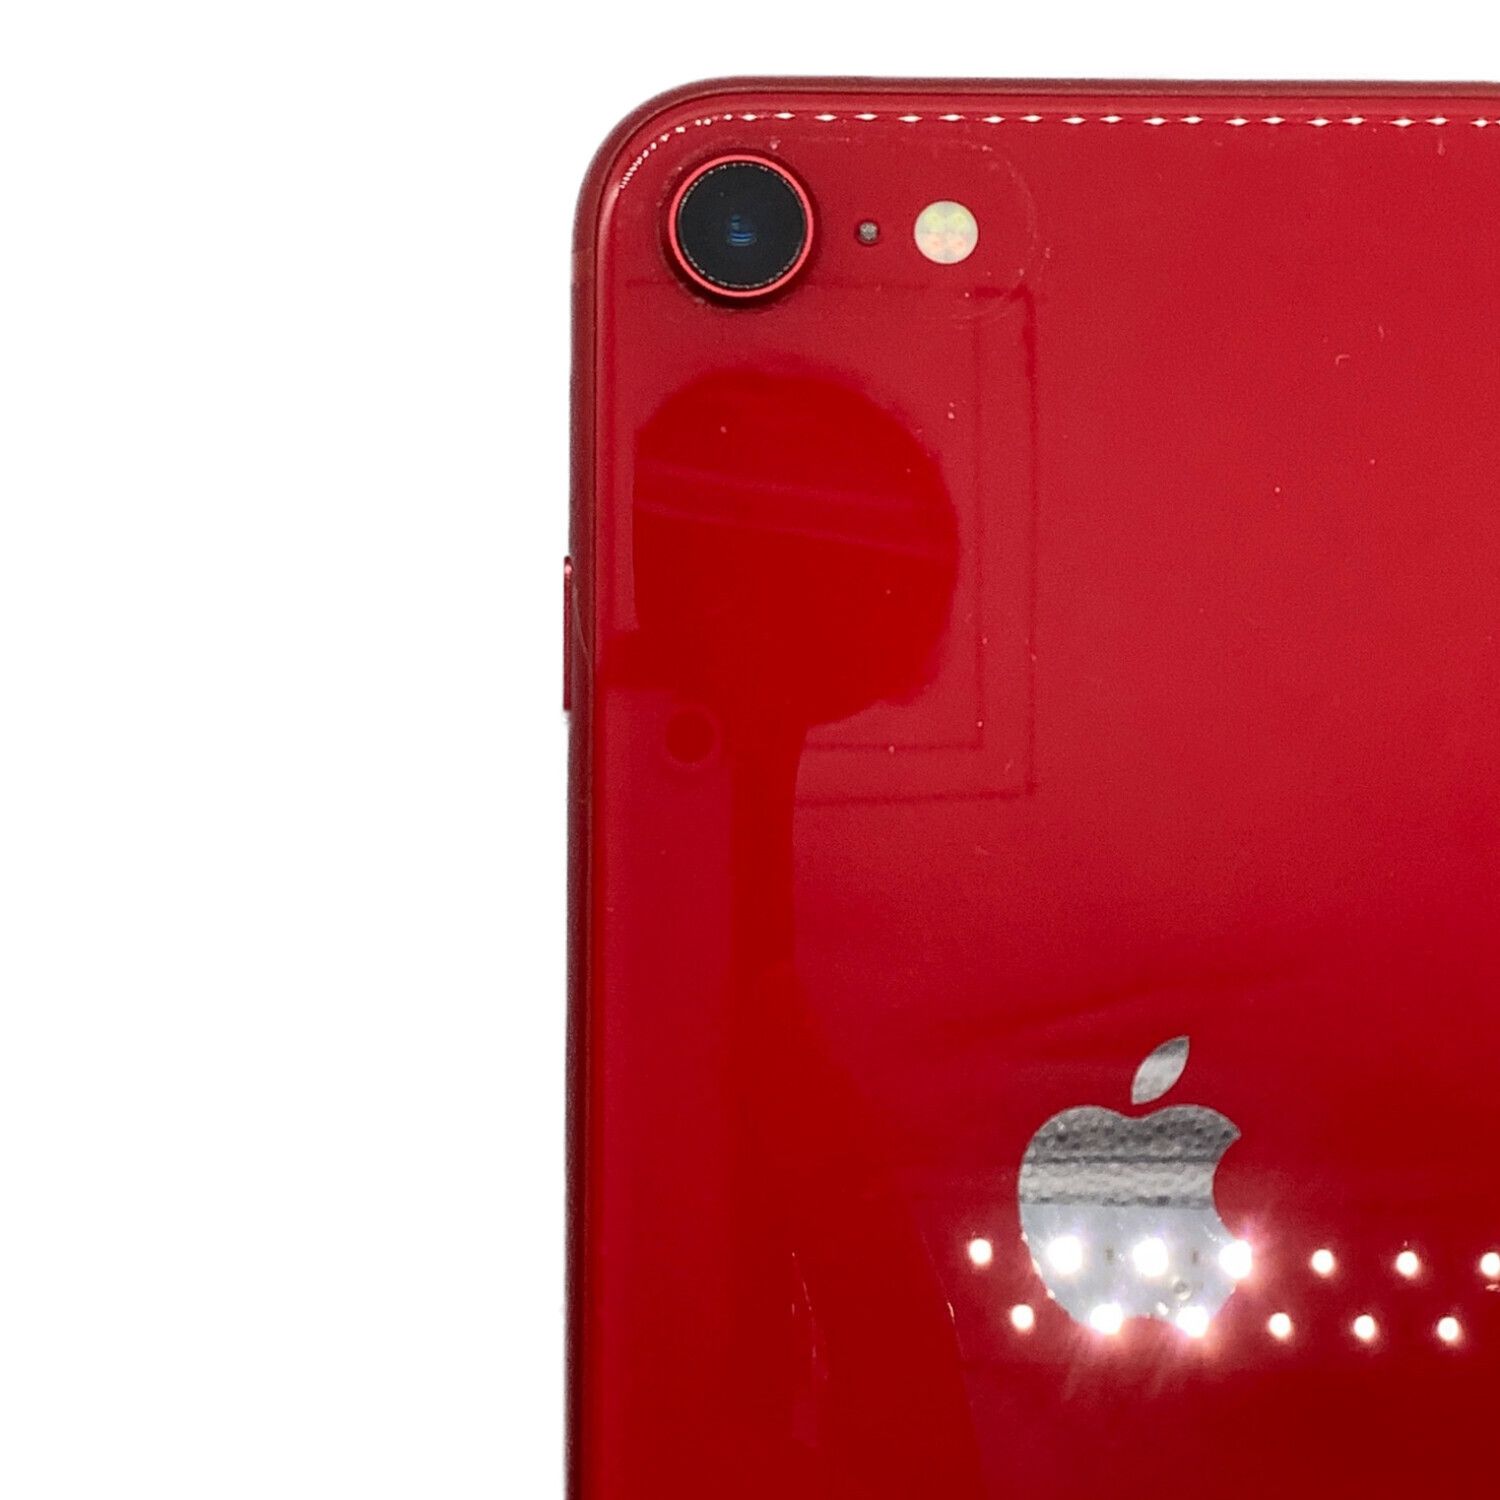 Apple (アップル) iPhone SE(第2世代) レッド MHGR3J/A docomo 64GB 